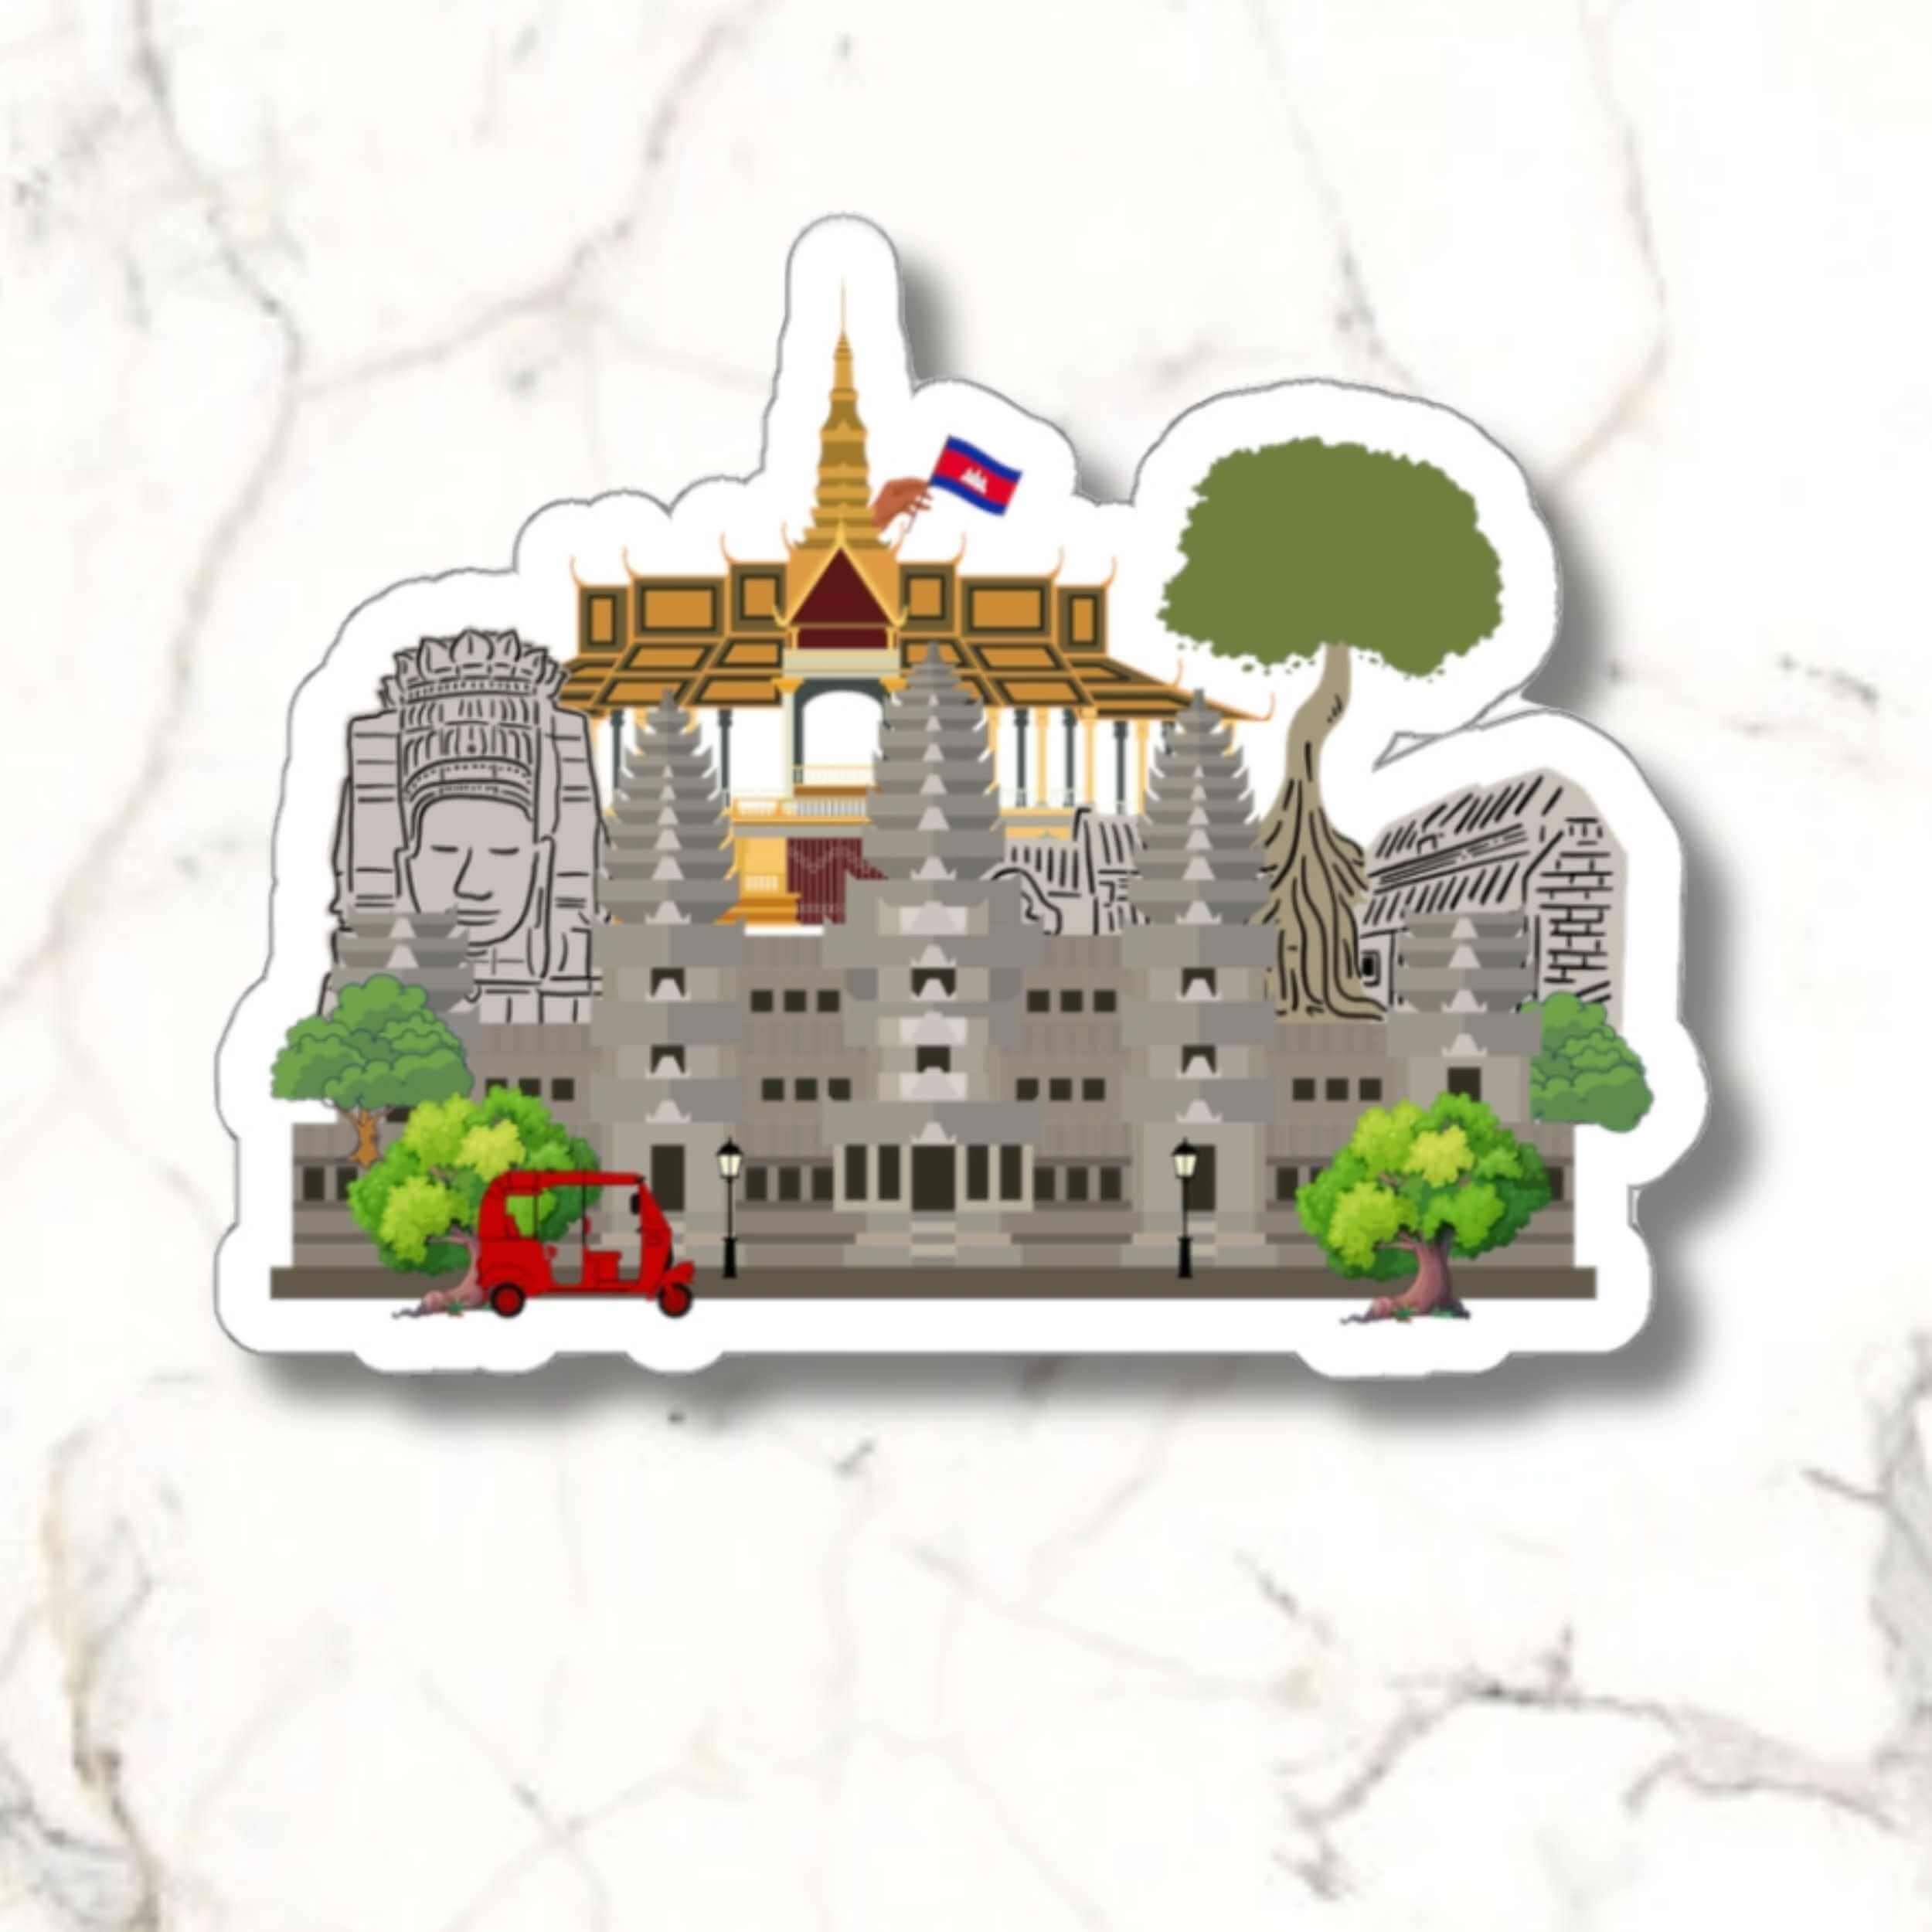 Cambodia Sticker